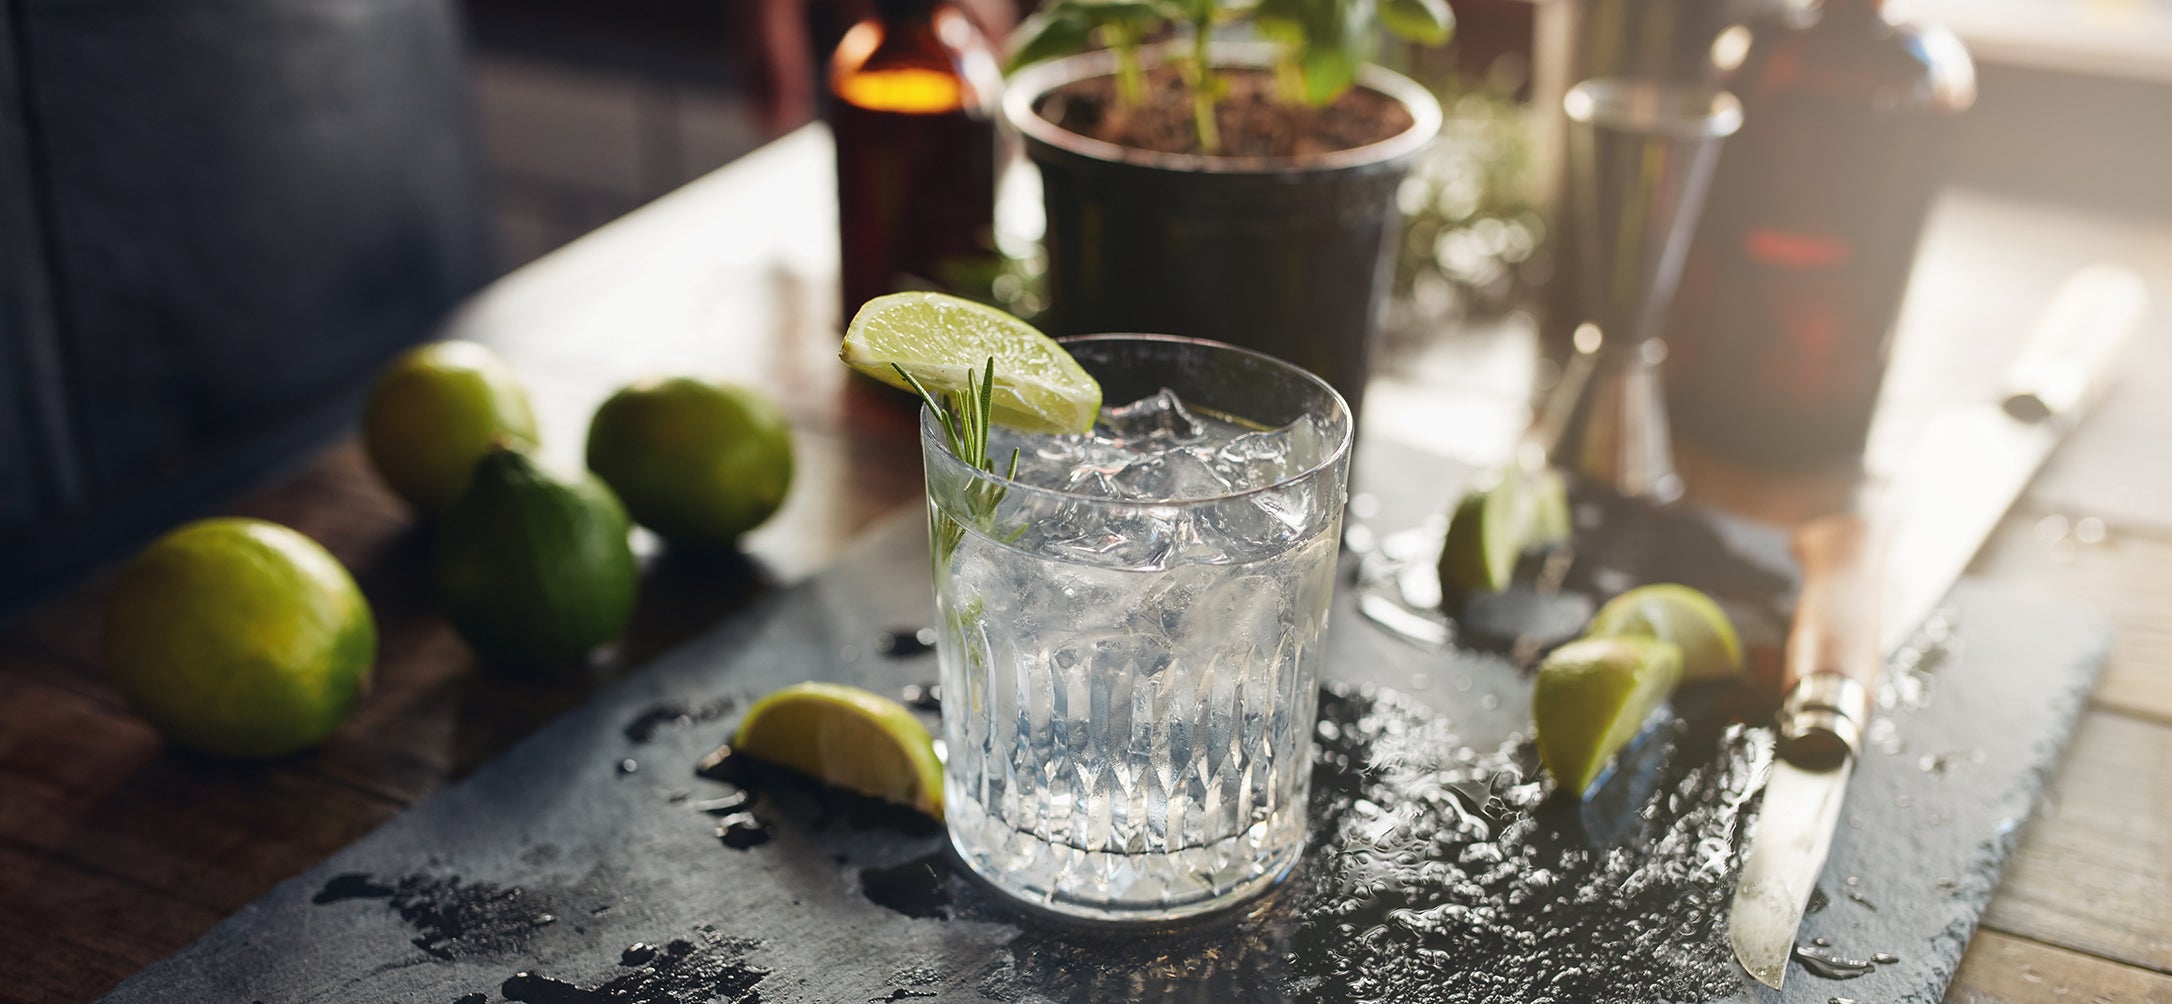 Historia del gin tonic